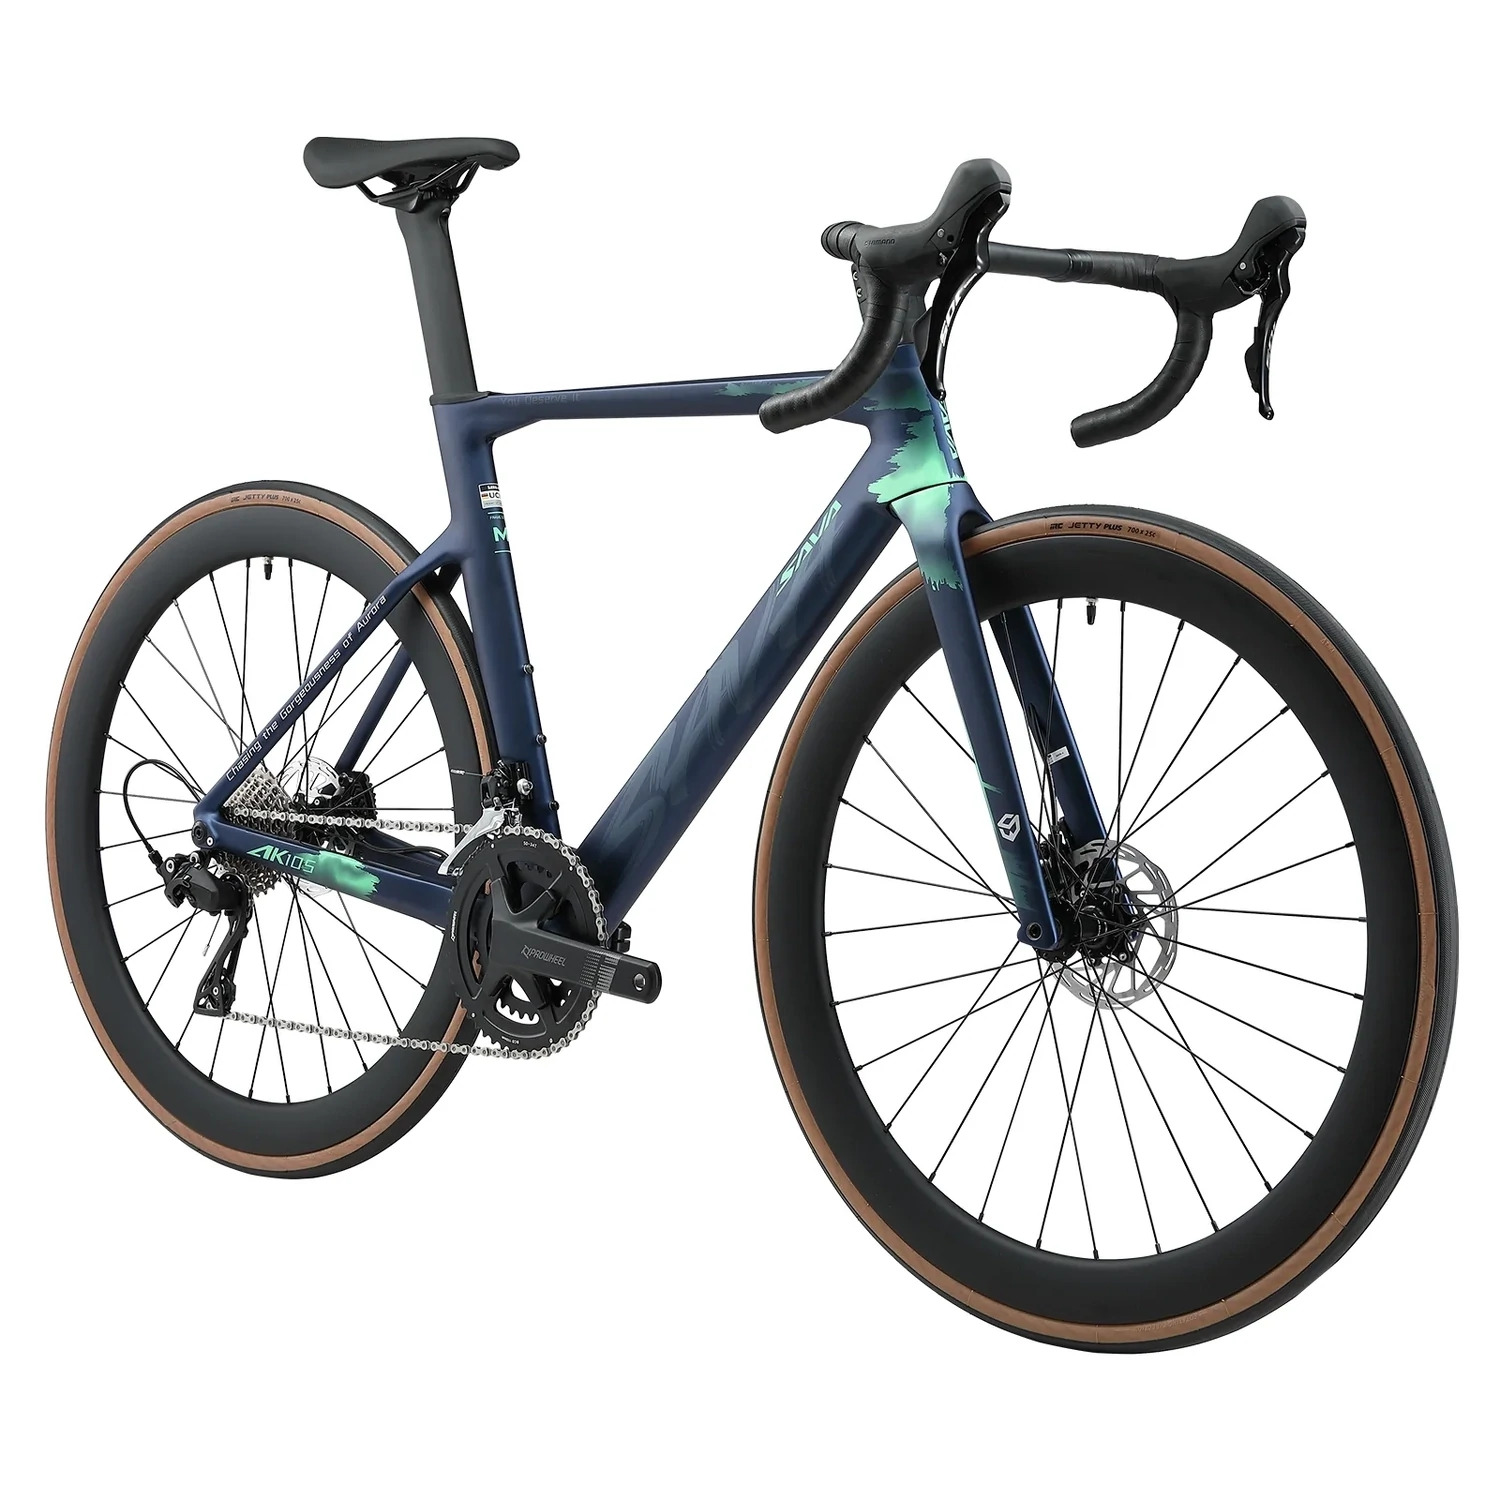 SAVA AK105 Carbon Racing Bike 105 R7120 Blue, Size: 52-52 cm